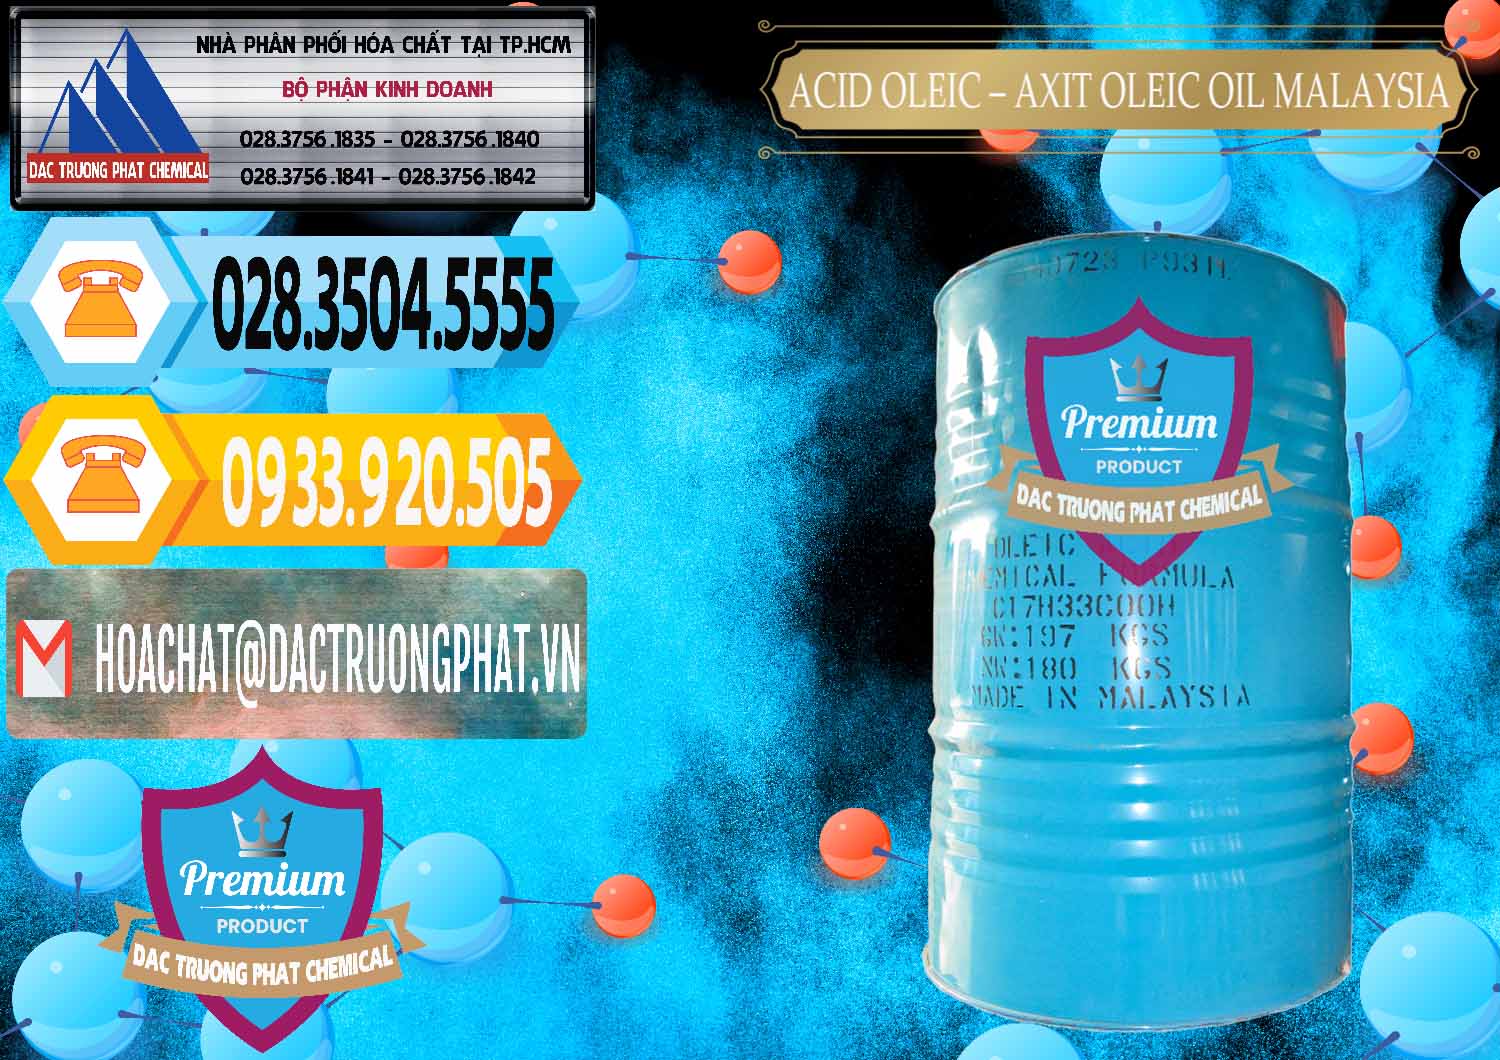 Đơn vị bán _ cung cấp Acid Oleic – Axit Oleic Oil Malaysia - 0013 - Cty phân phối _ cung ứng hóa chất tại TP.HCM - hoachattayrua.net